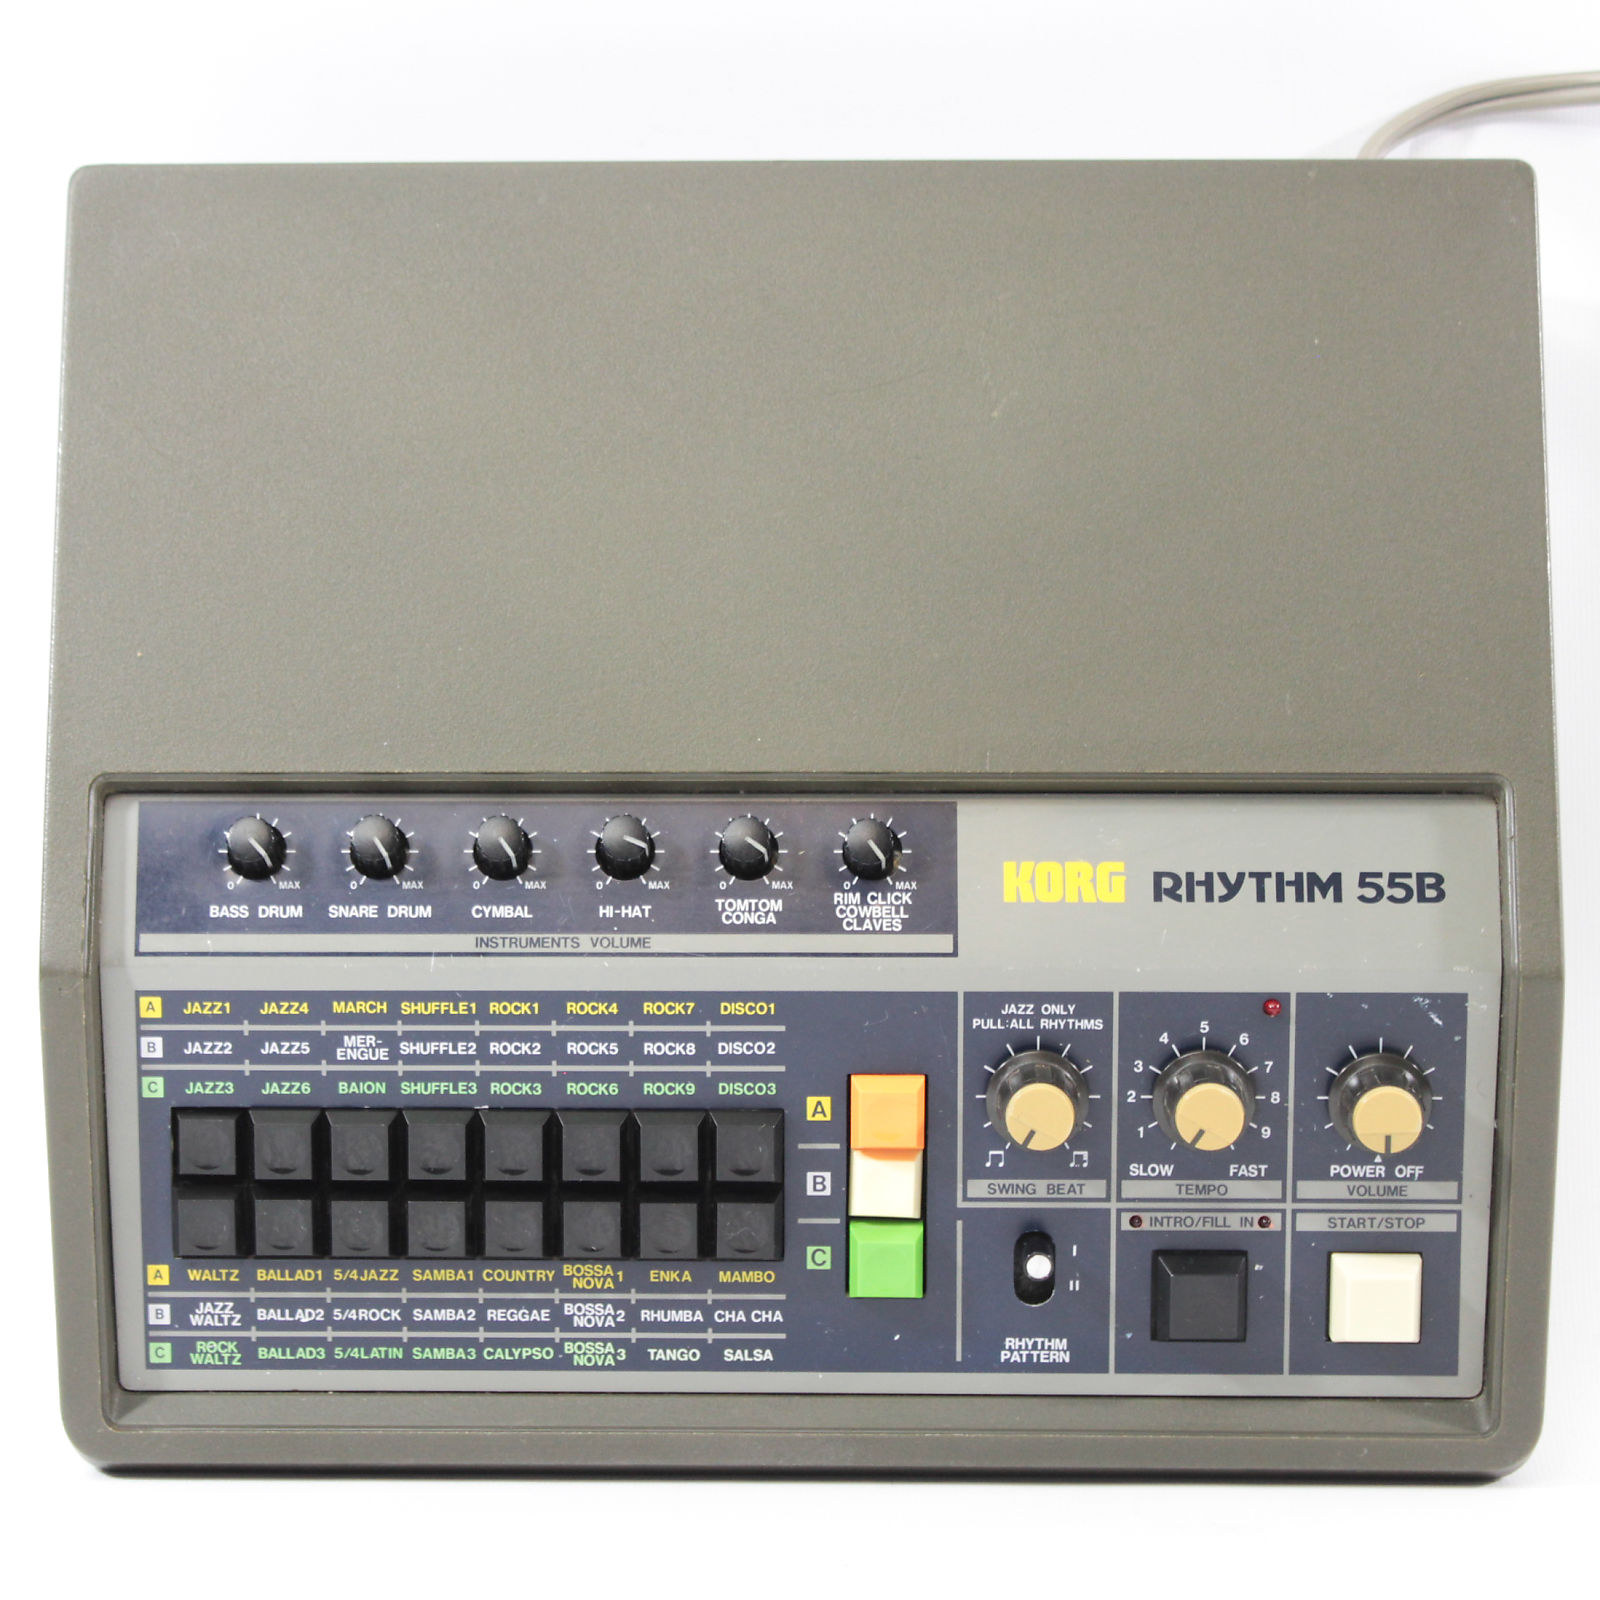 Korg KR-55B Rhythm 55B Analog Drum Machine | Reverb